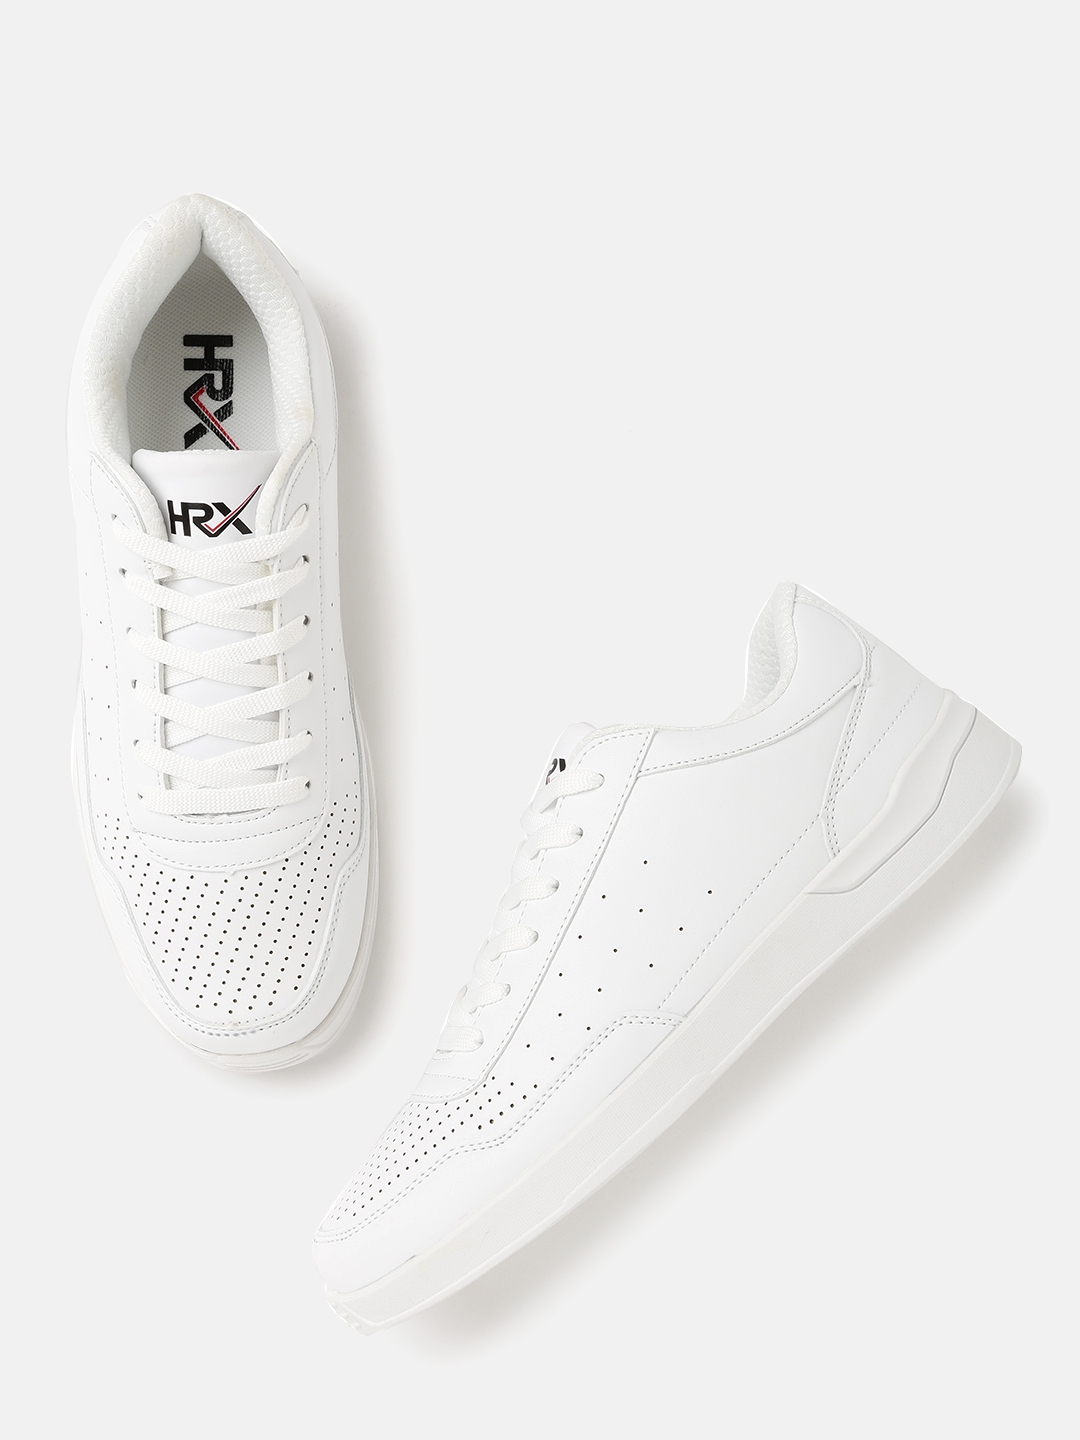 hrx white shoes